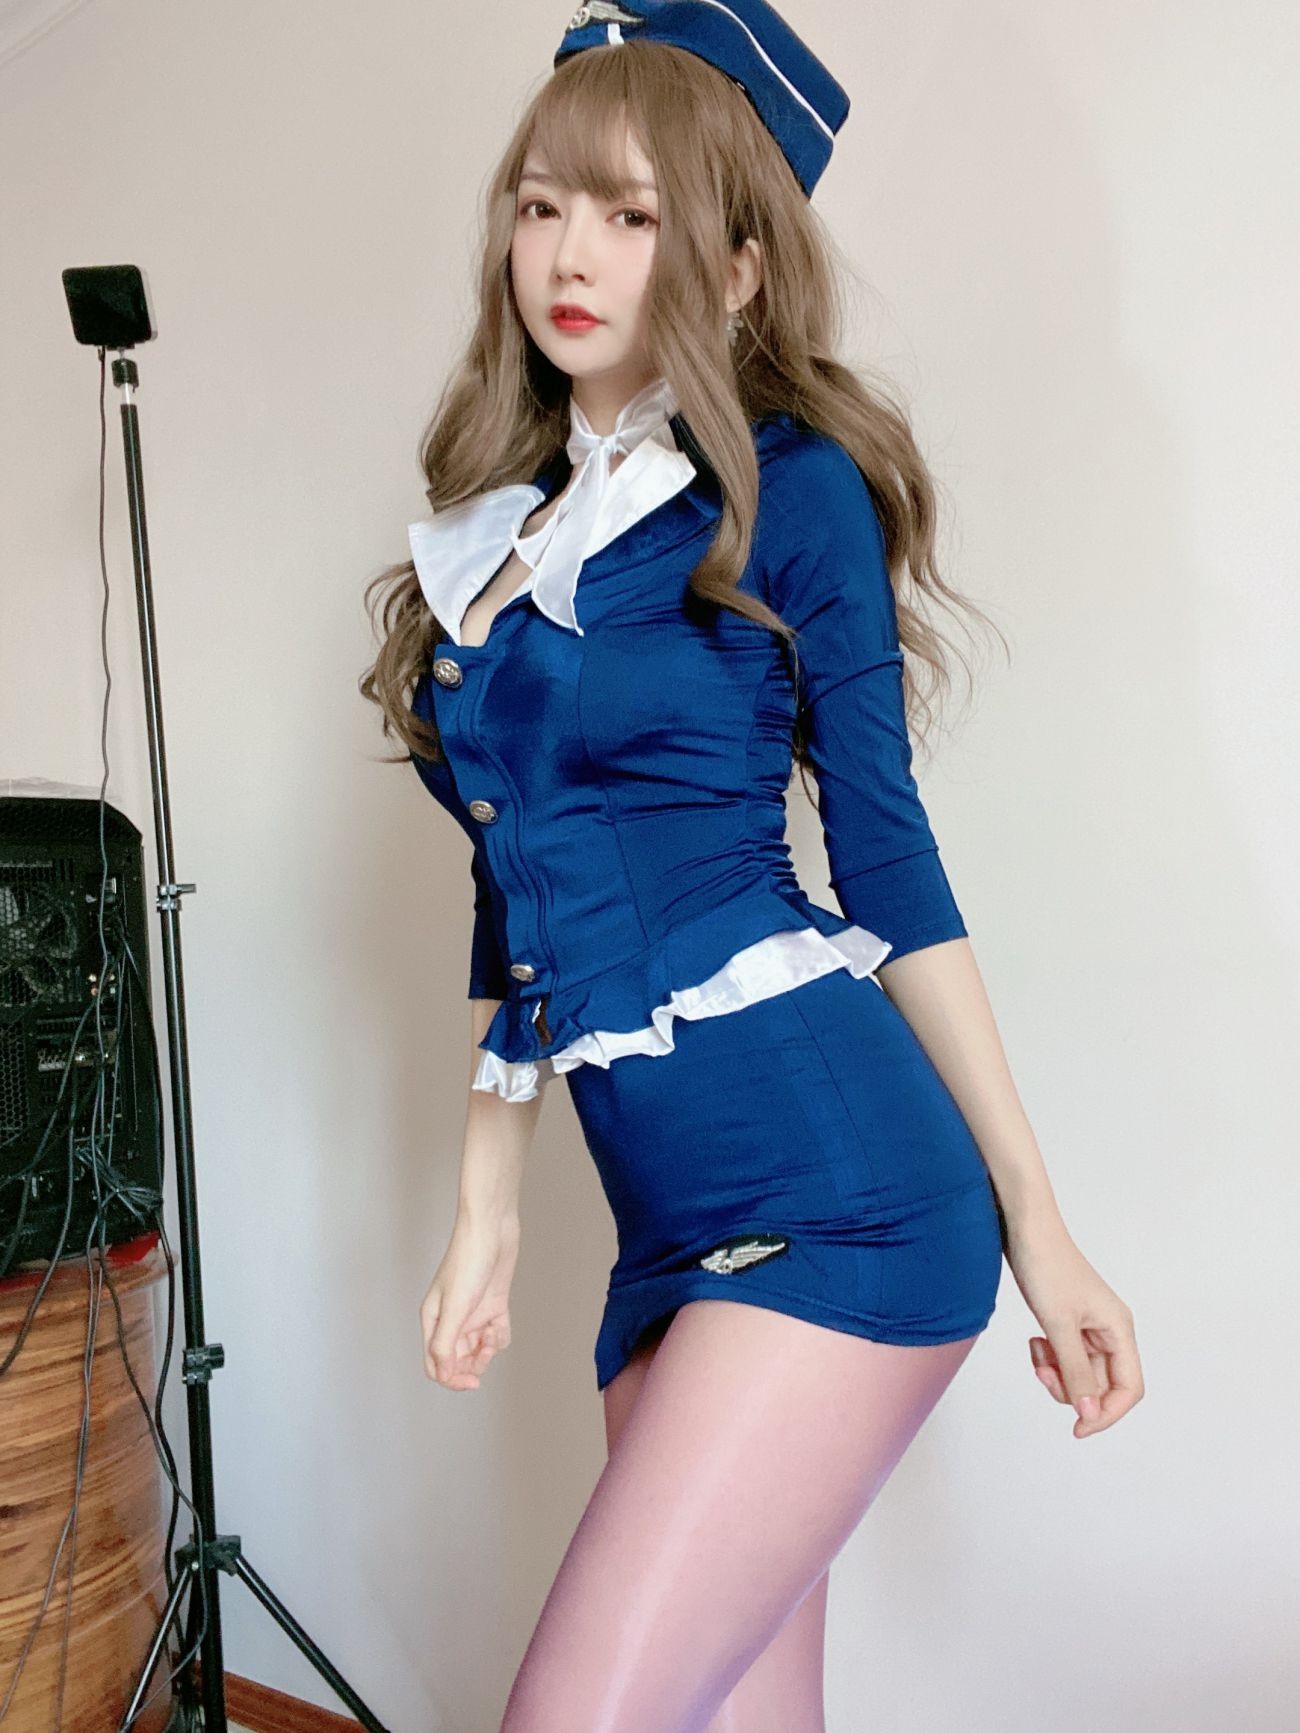 微博美少女51酱性感写真蓝色制服装 (2)